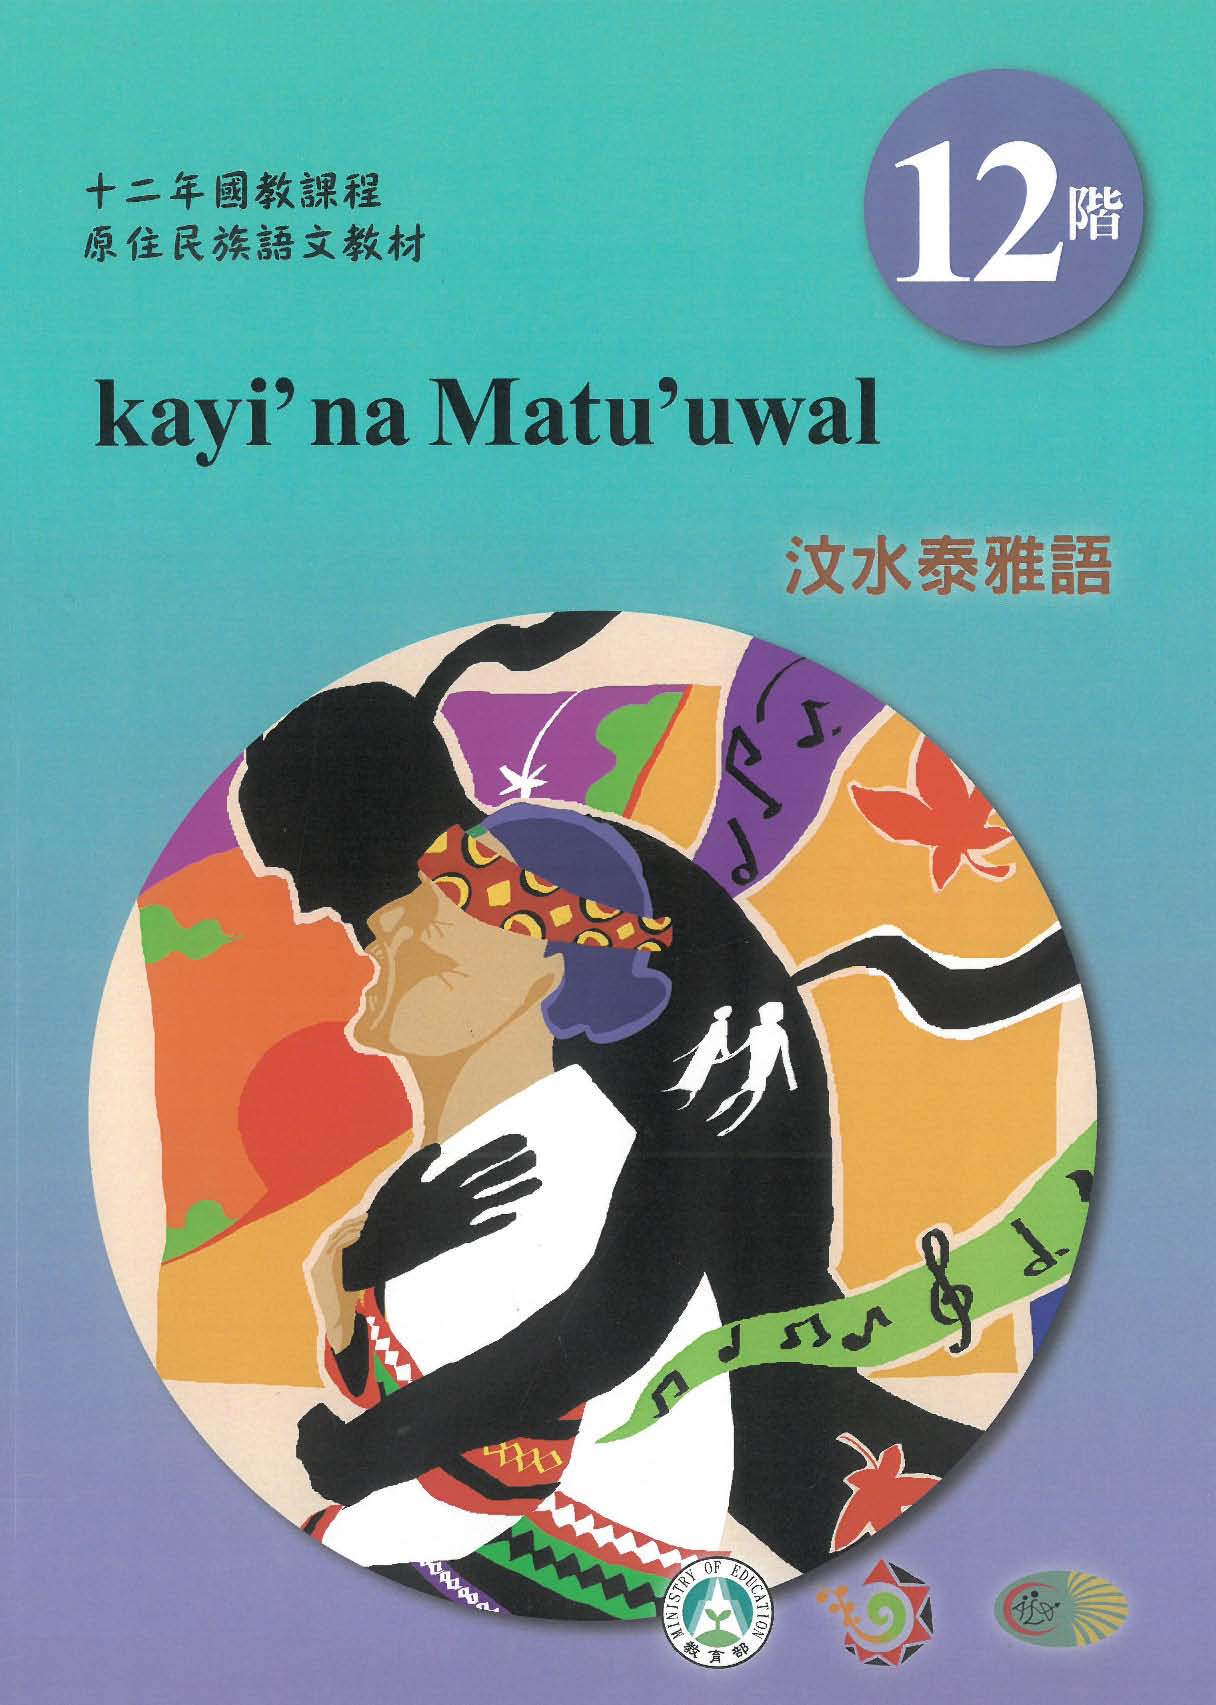 十二年國教原住民族語文教材 汶水泰雅語 學習手冊 第12階